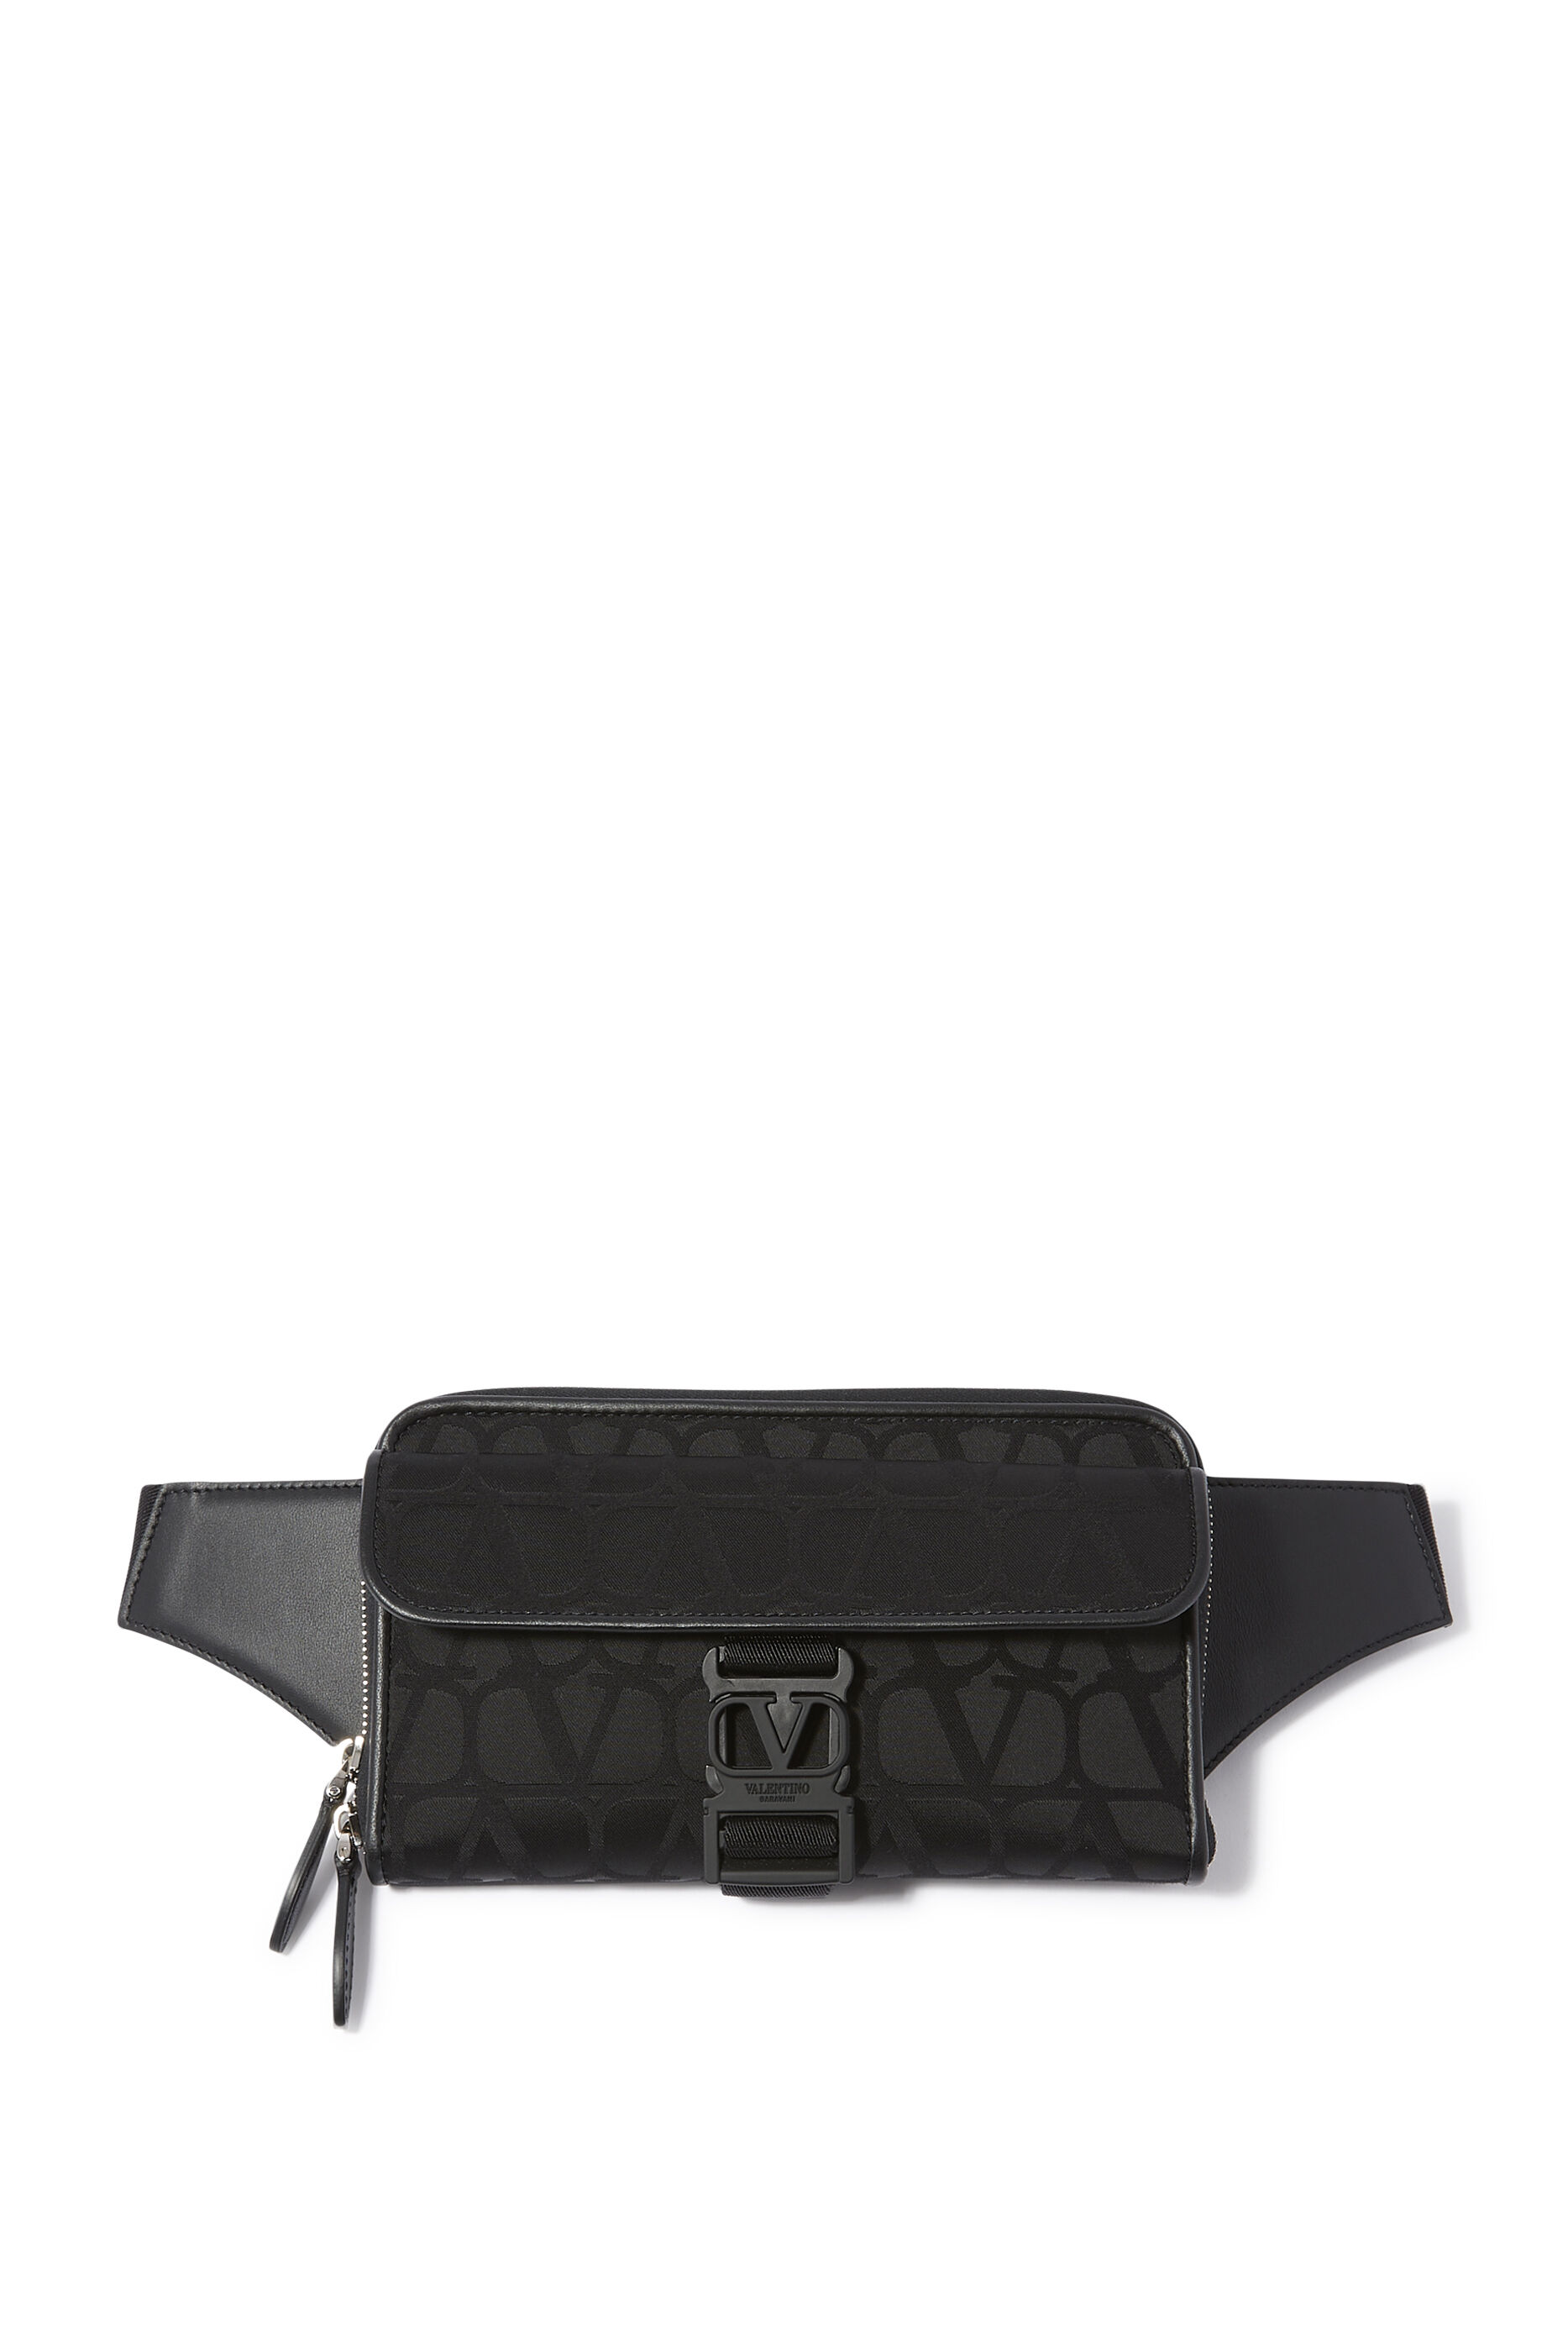 Men Women Fanny Pack Belt Waist Bags Cross Body Sling Shoulder Travel Work  Pouch  eBay